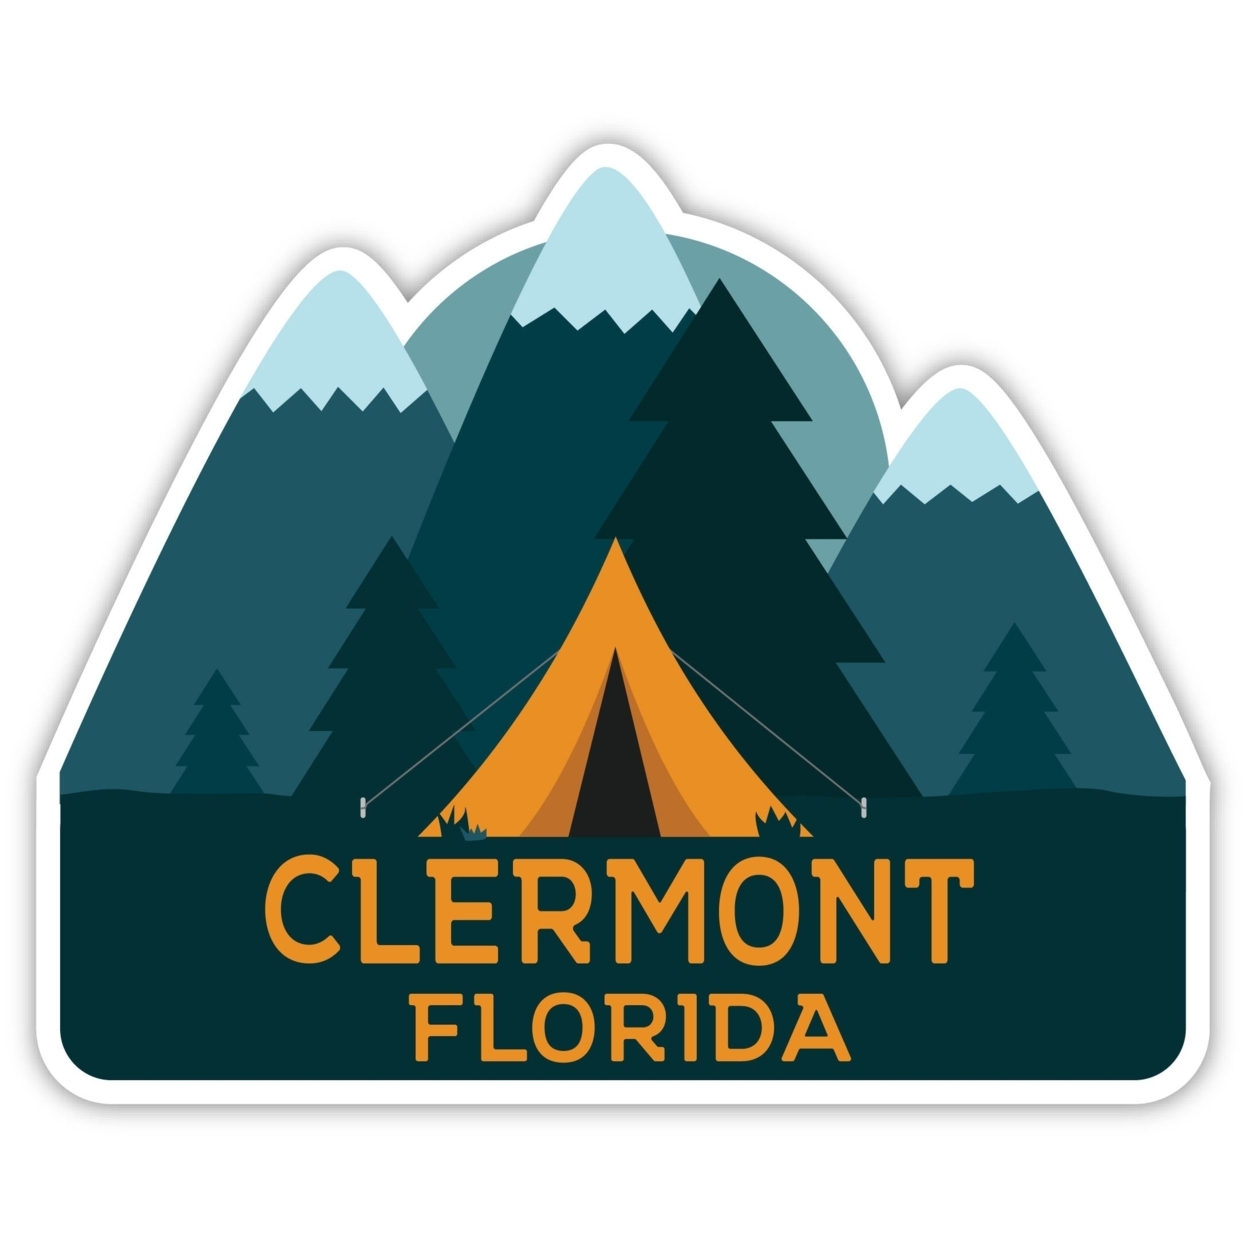 Clermont Florida Souvenir Decorative Stickers (Choose Theme And Size) - Single Unit, 4-Inch, Tent